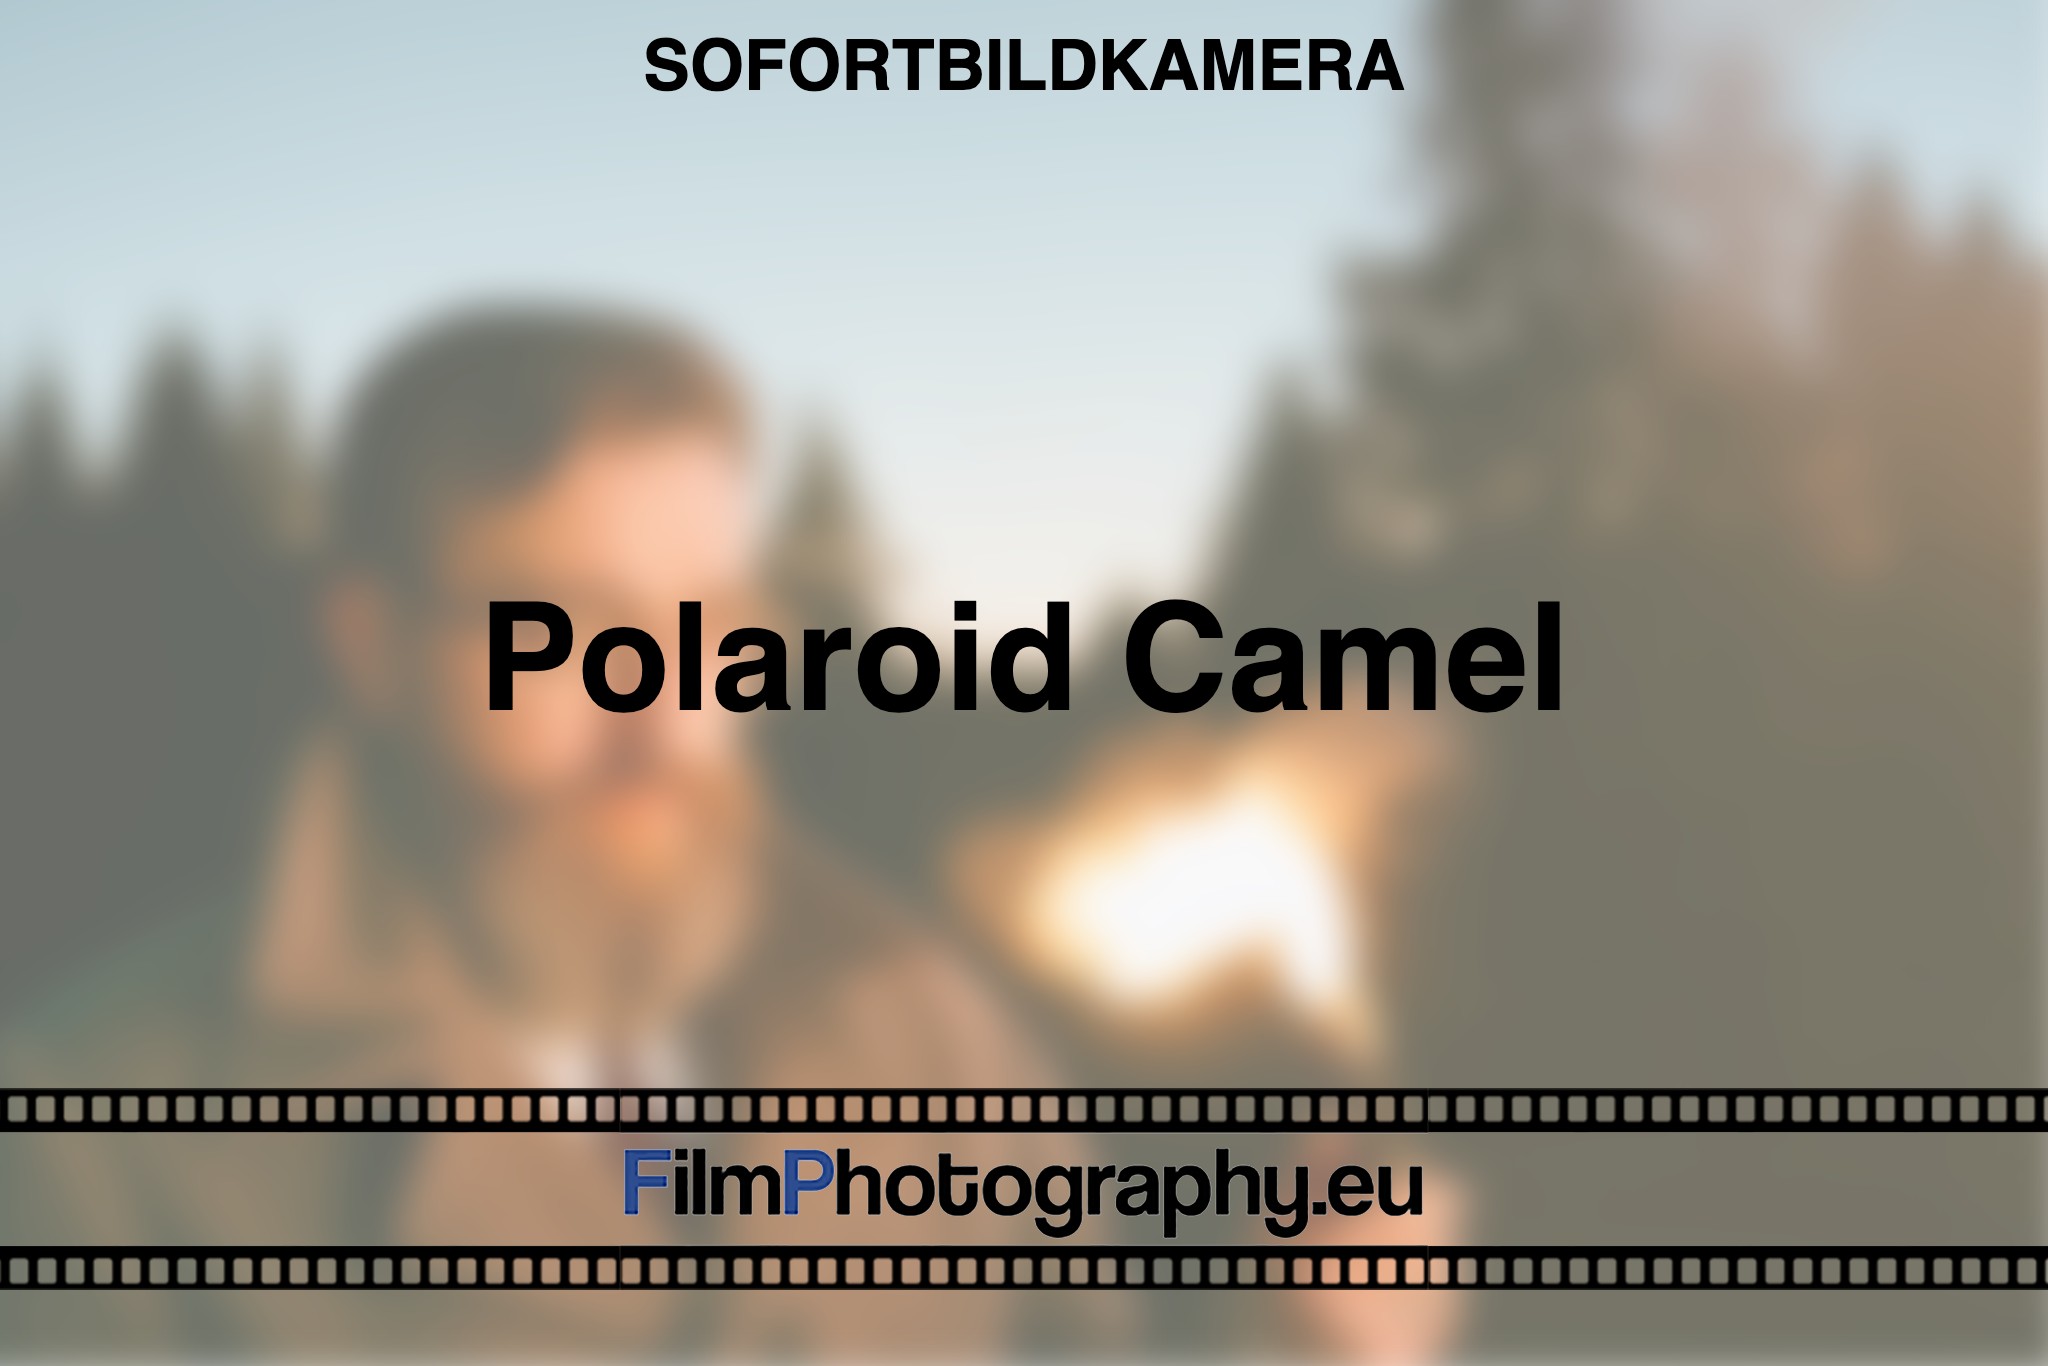 polaroid-camel-sofortbildkamera-fp-bnv